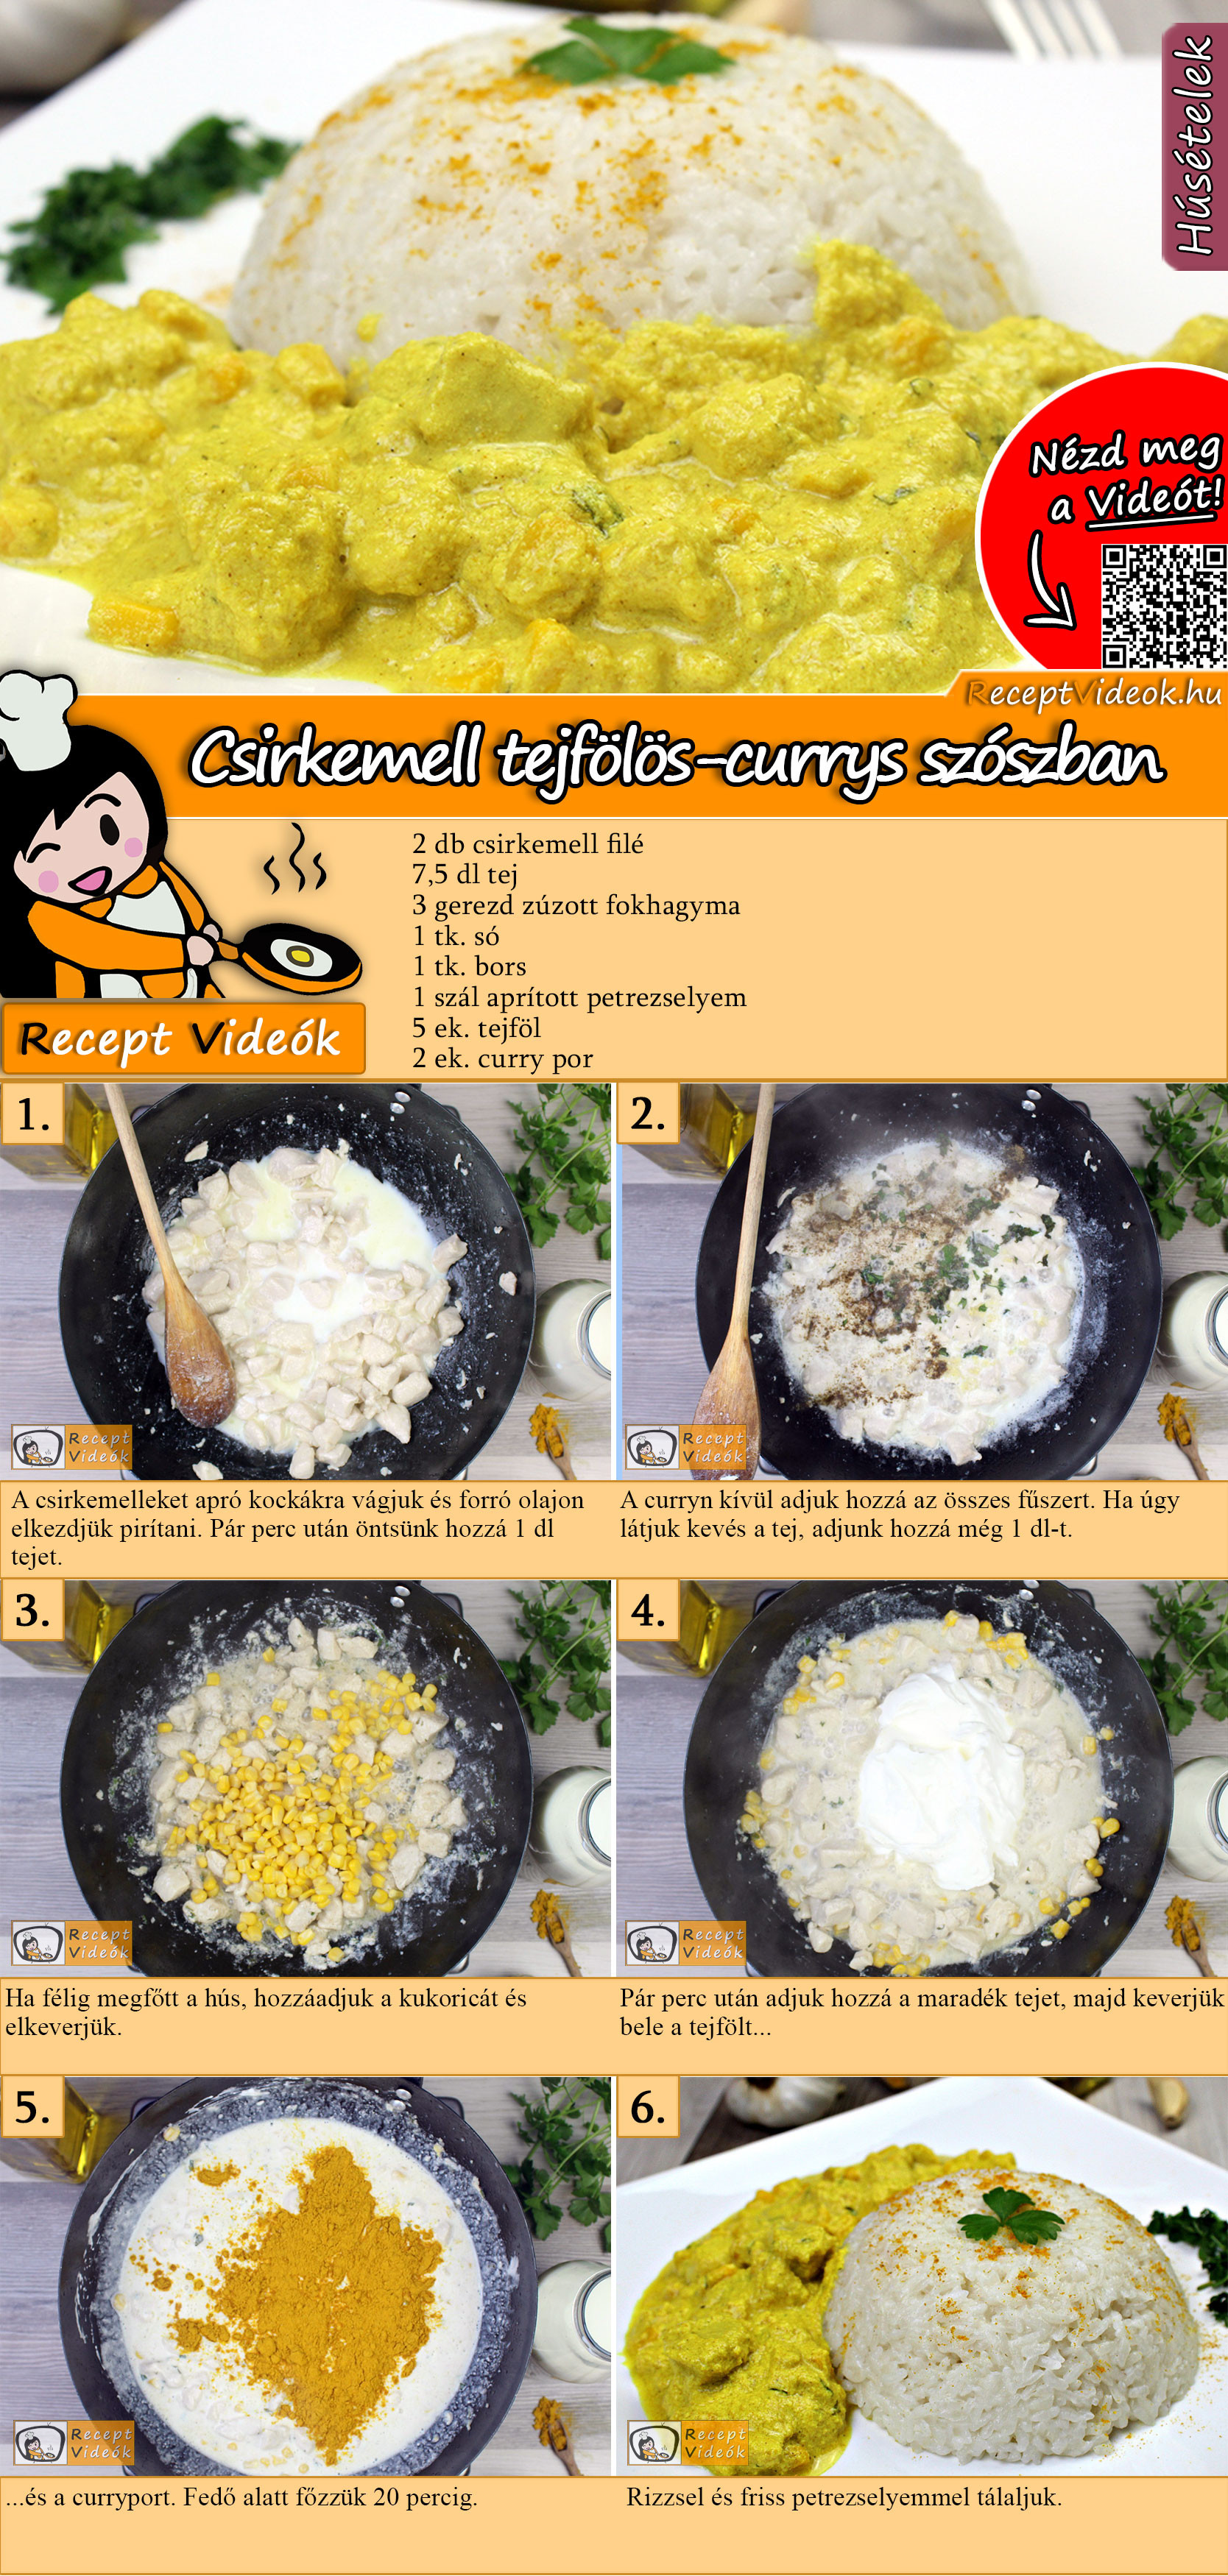 Csirkemell tejfölös-currys szószban recept elkészítése videóval